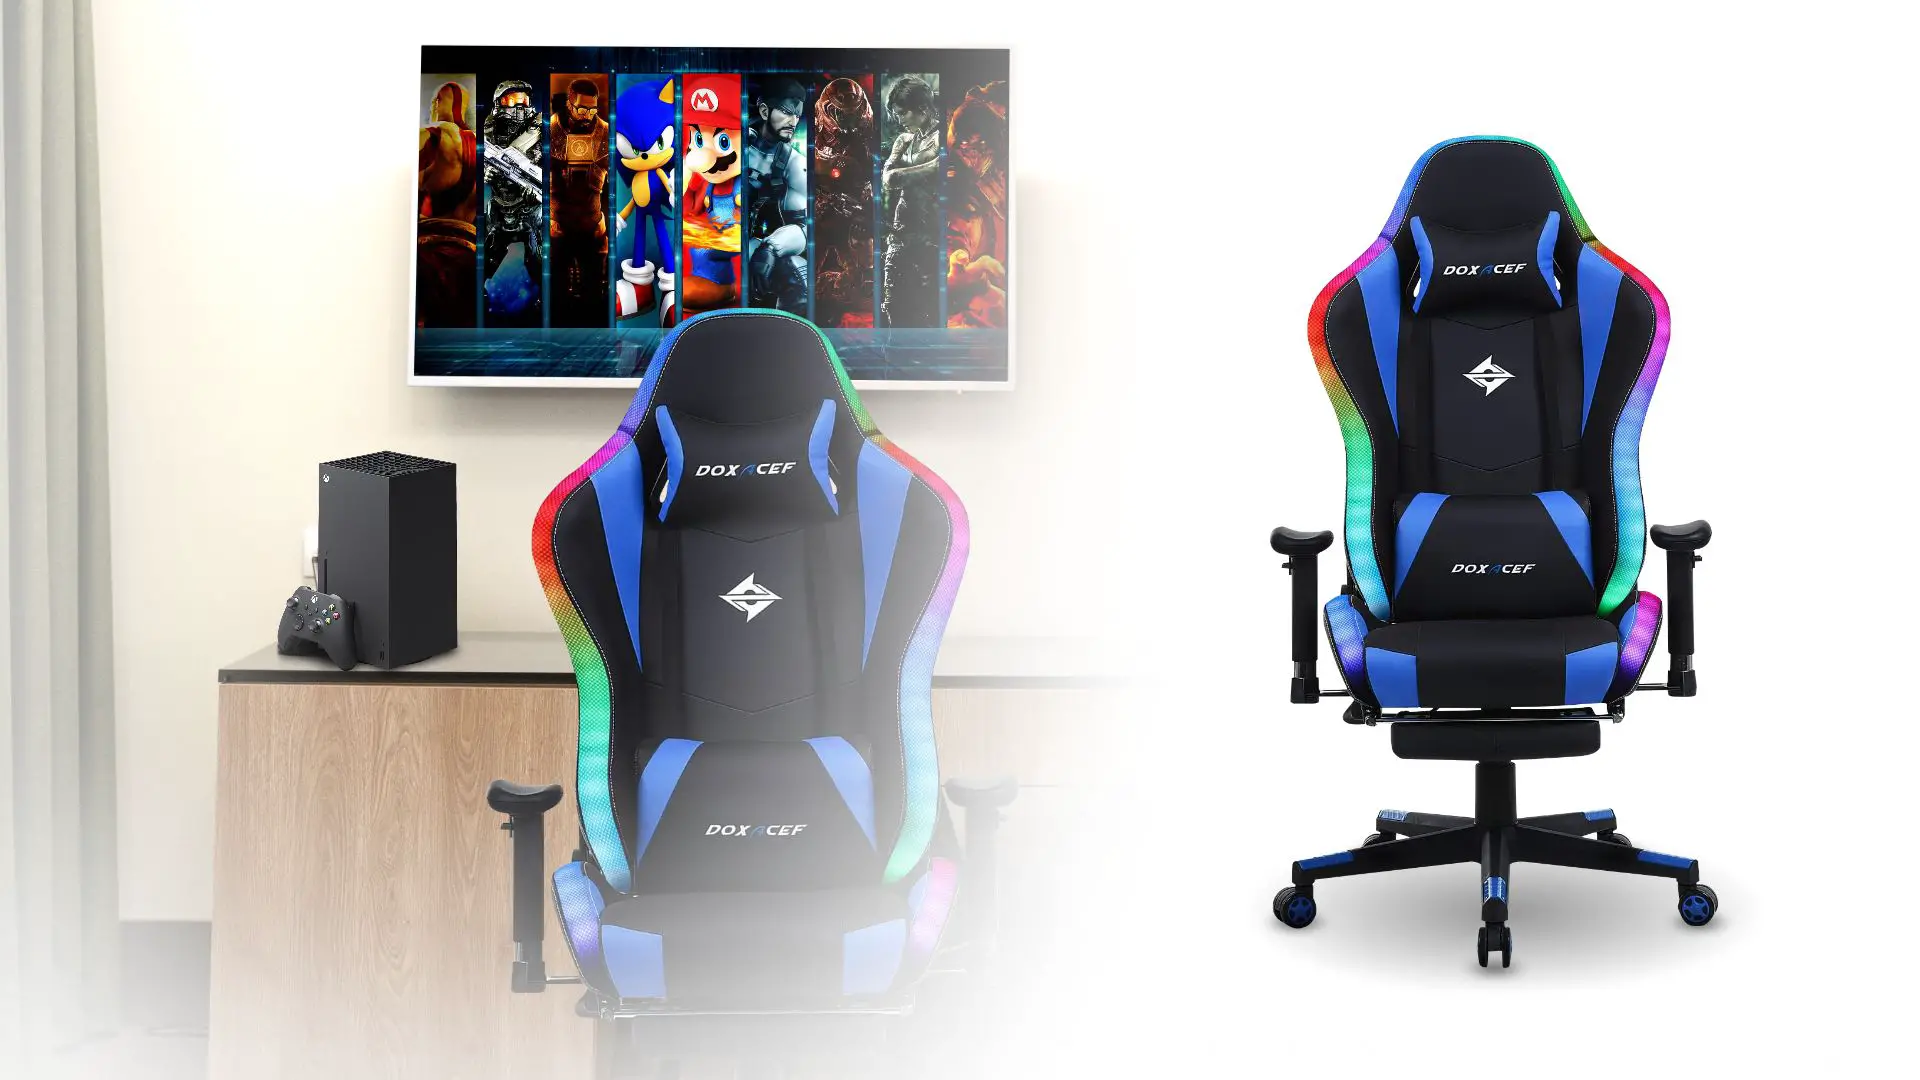 6.DOXACEF RGB Gaming Chair – 1